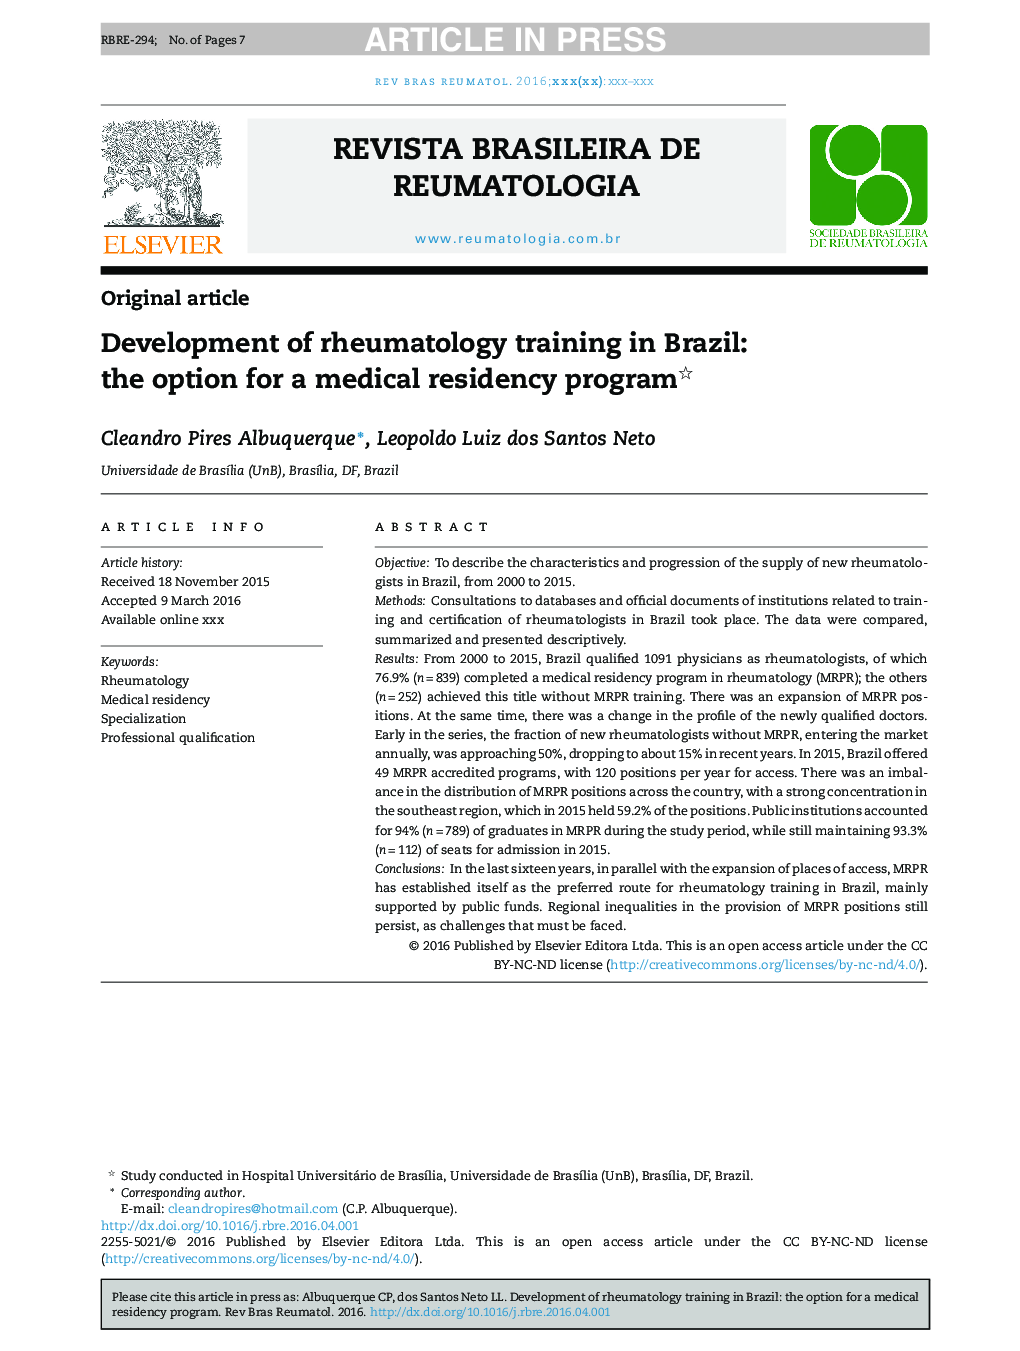 توسعه آموزش روماتولوژی در برزیل: گزینه ای برای برنامه اقامت پزشکی 